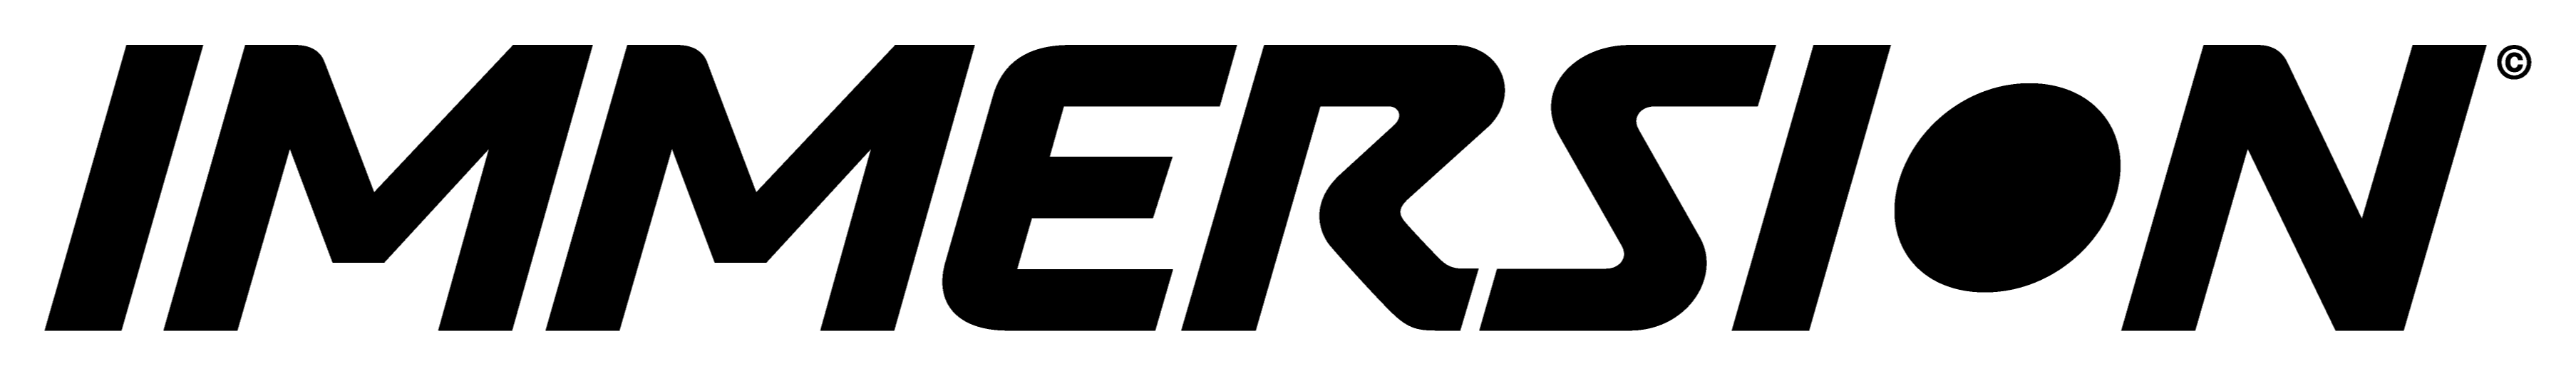 Logo de la revue Immersion contenant un lien redirigeant sur leur site internet.